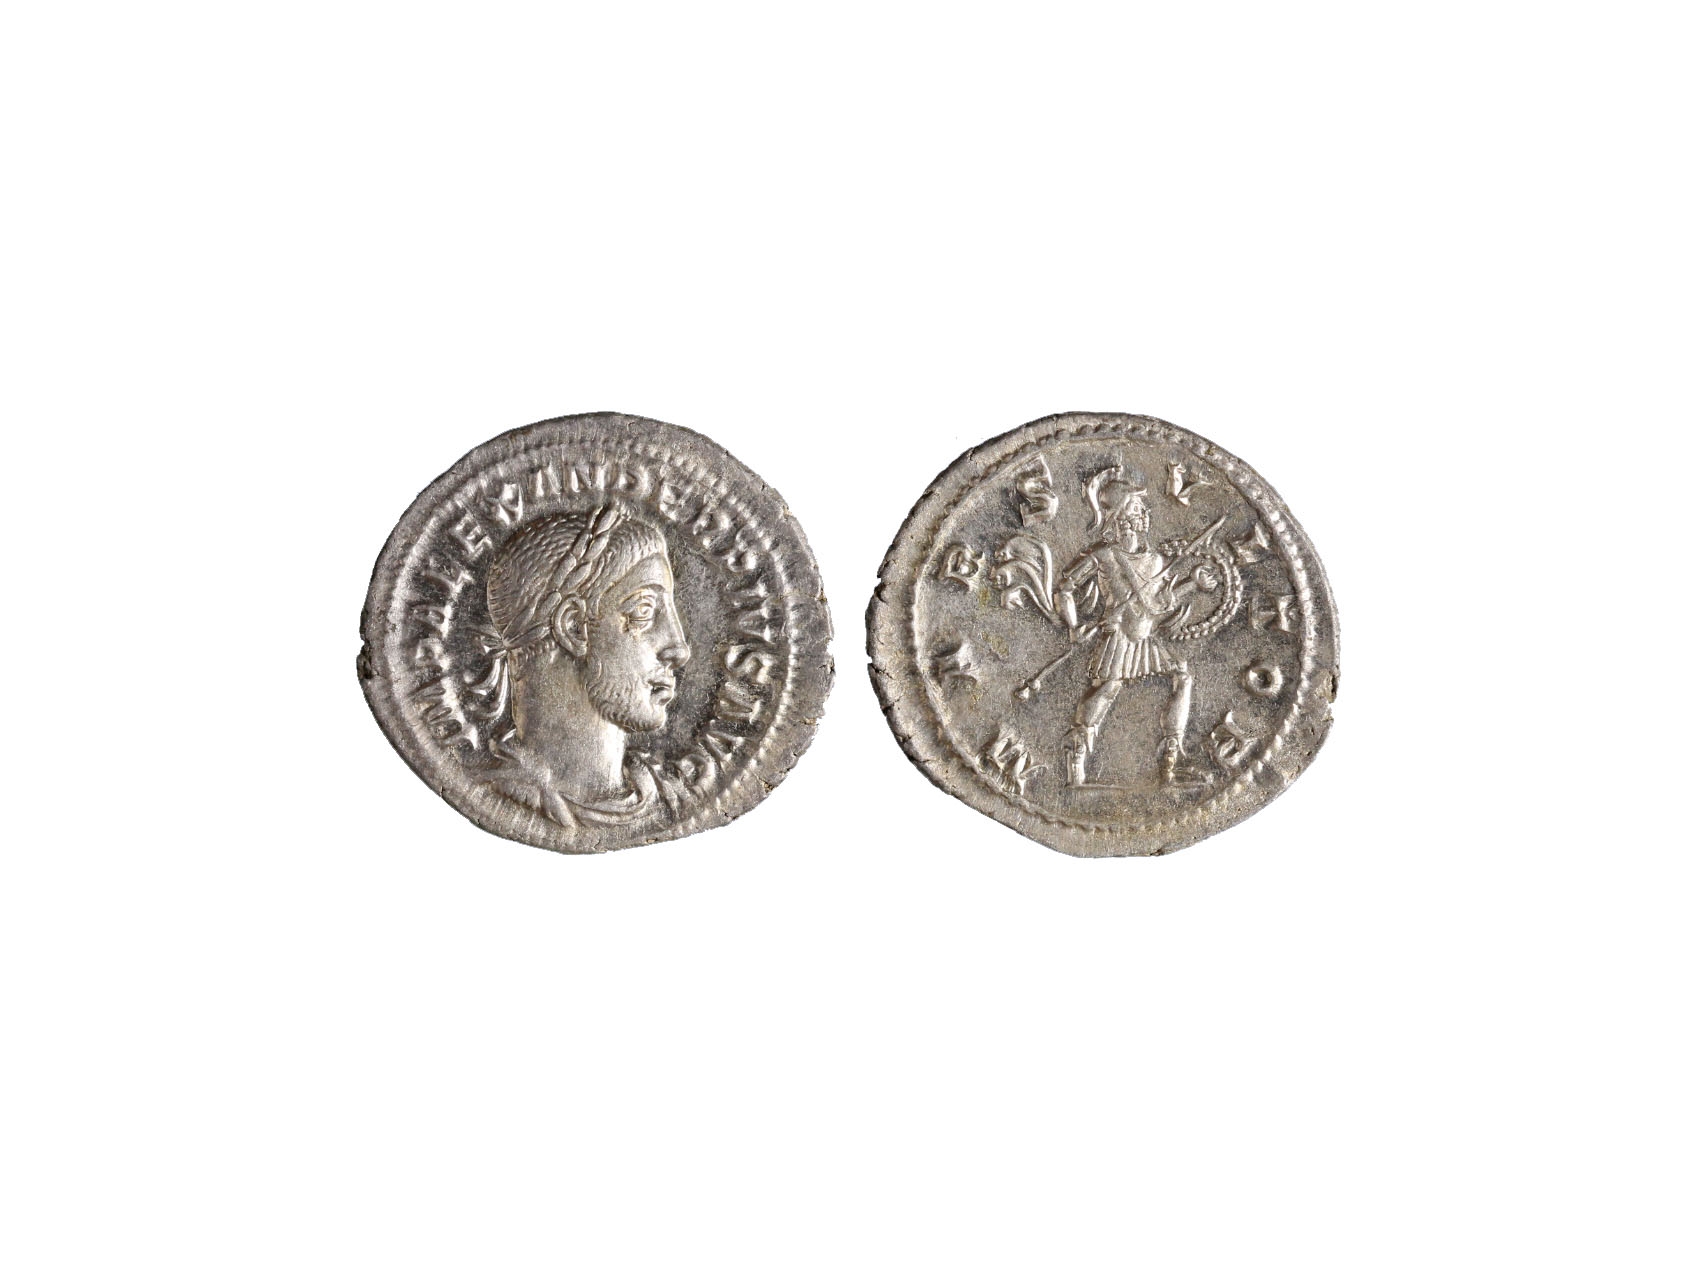 Řím císařství, Severus Alexander 222-235 n.l. - Denár 232 n.l., 3,43g, Rom. RIC 243, c 161